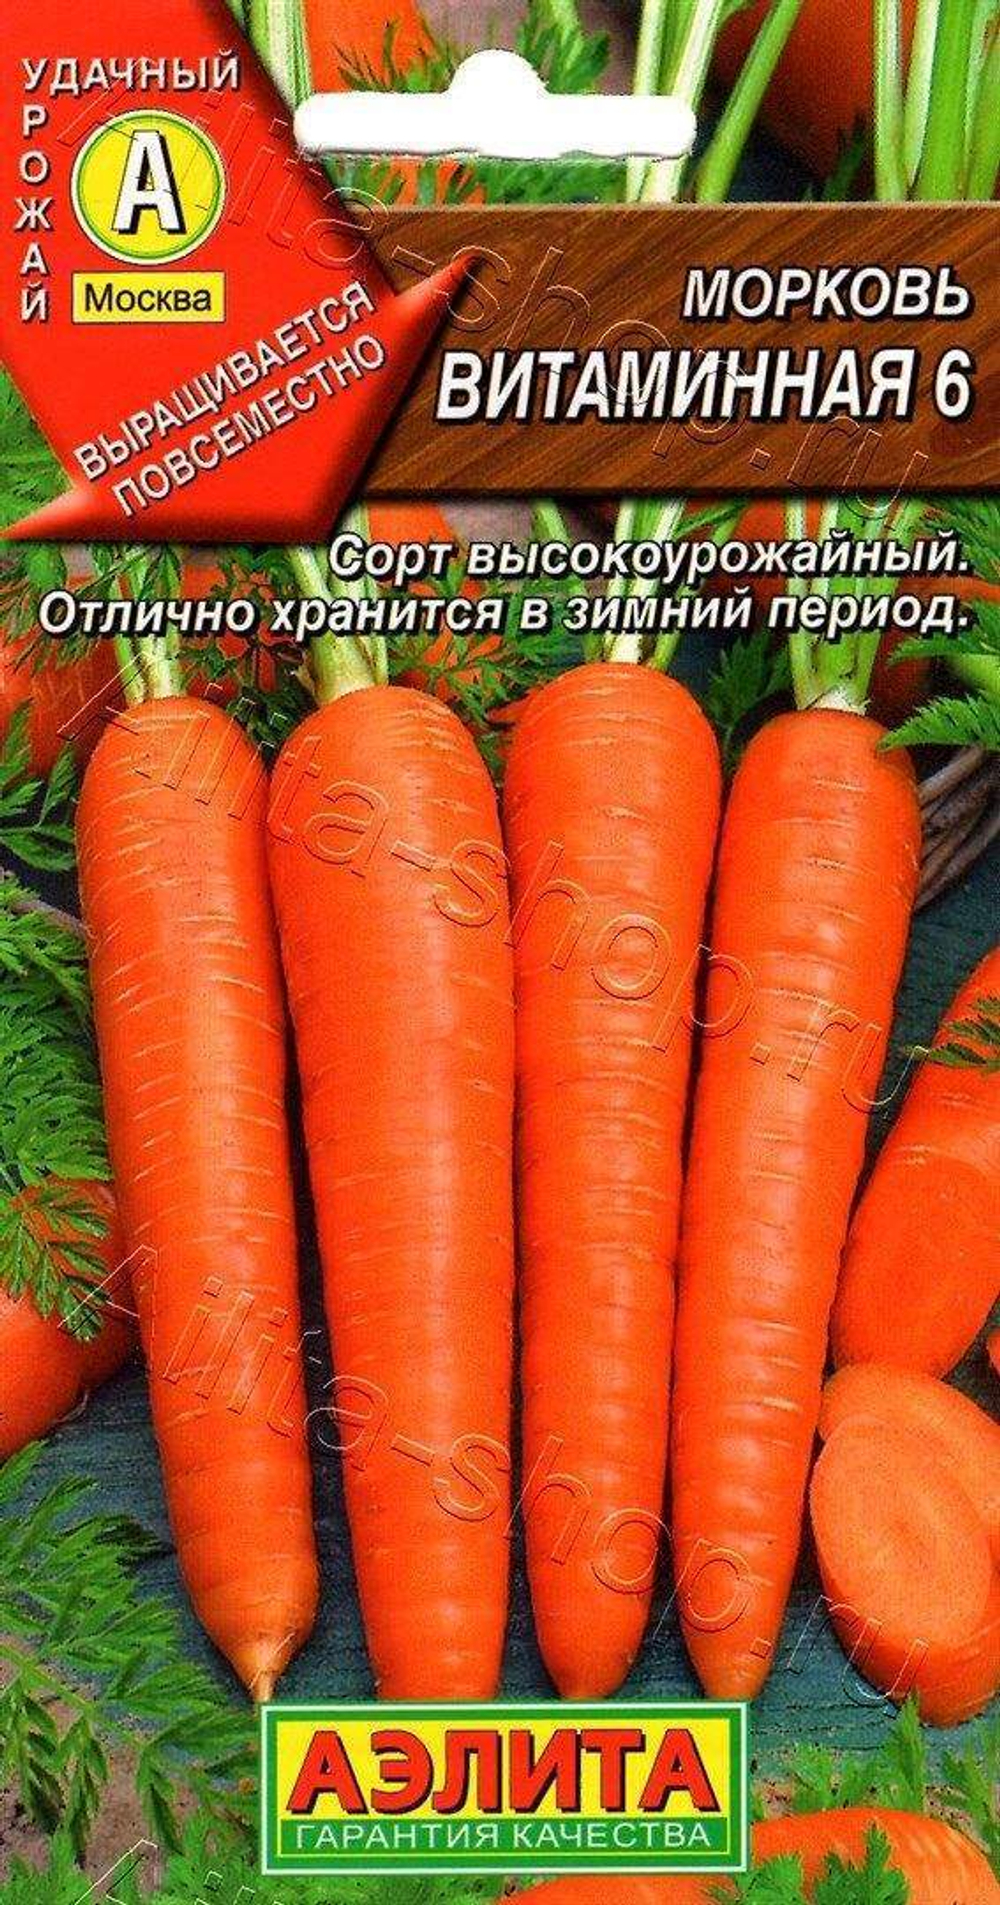 Морковь Витаминная Ц Аэлита